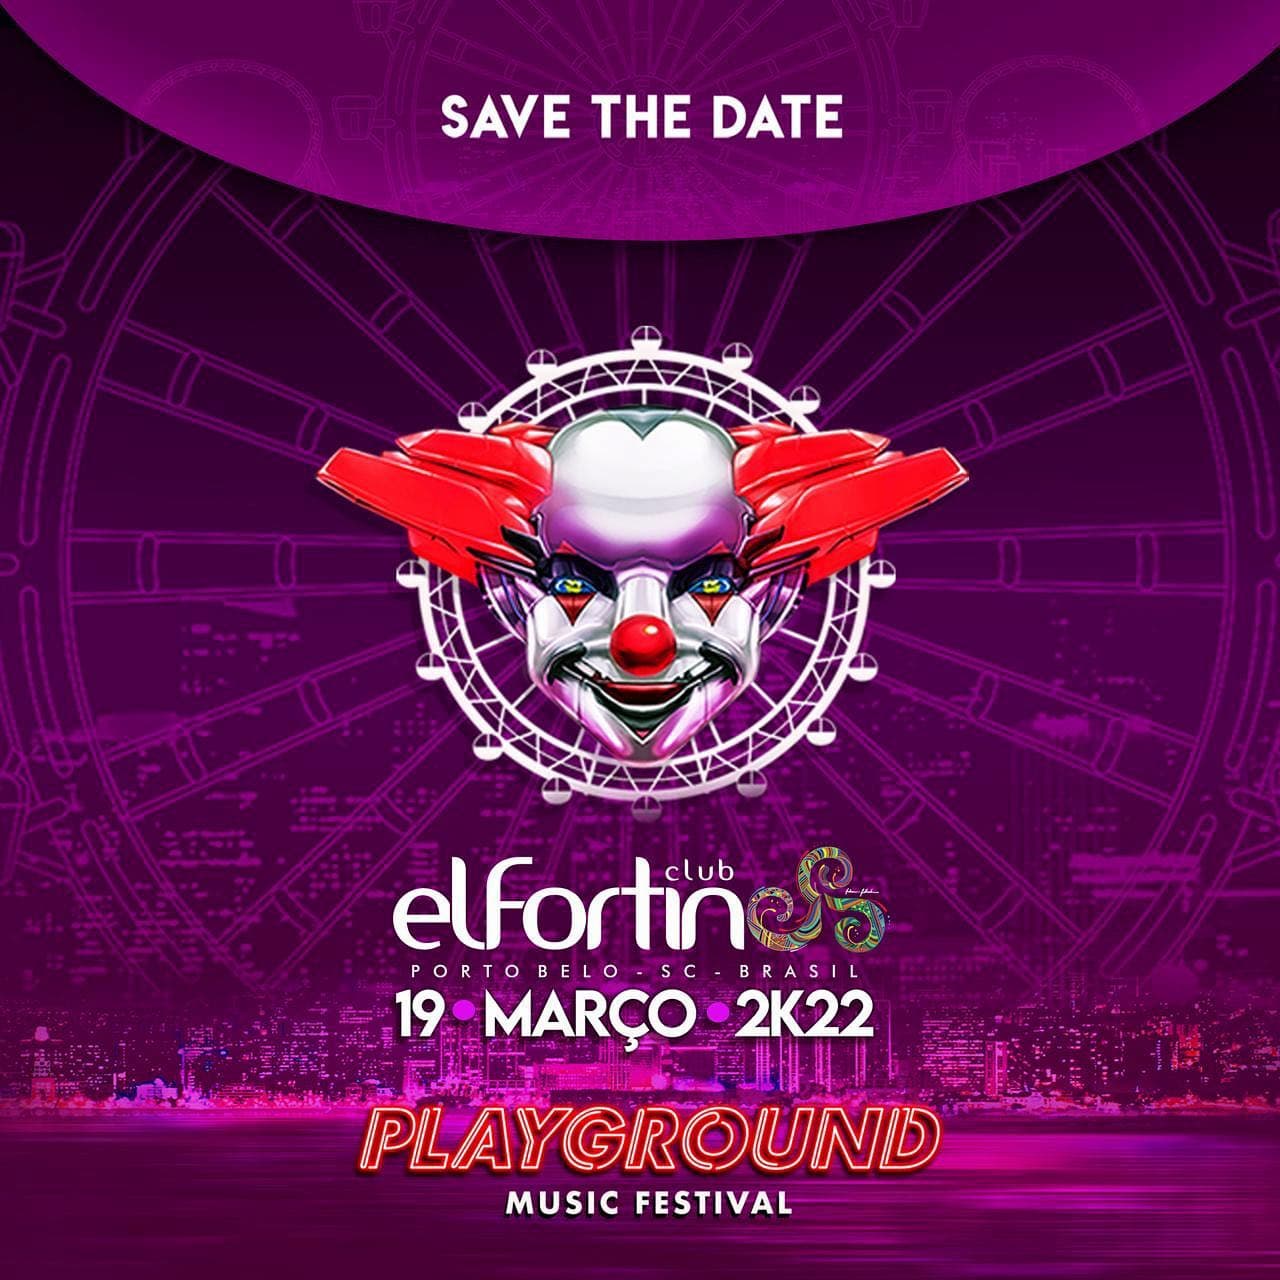 Playground Festival e El Fortin anunciam parceria para Março de 2022